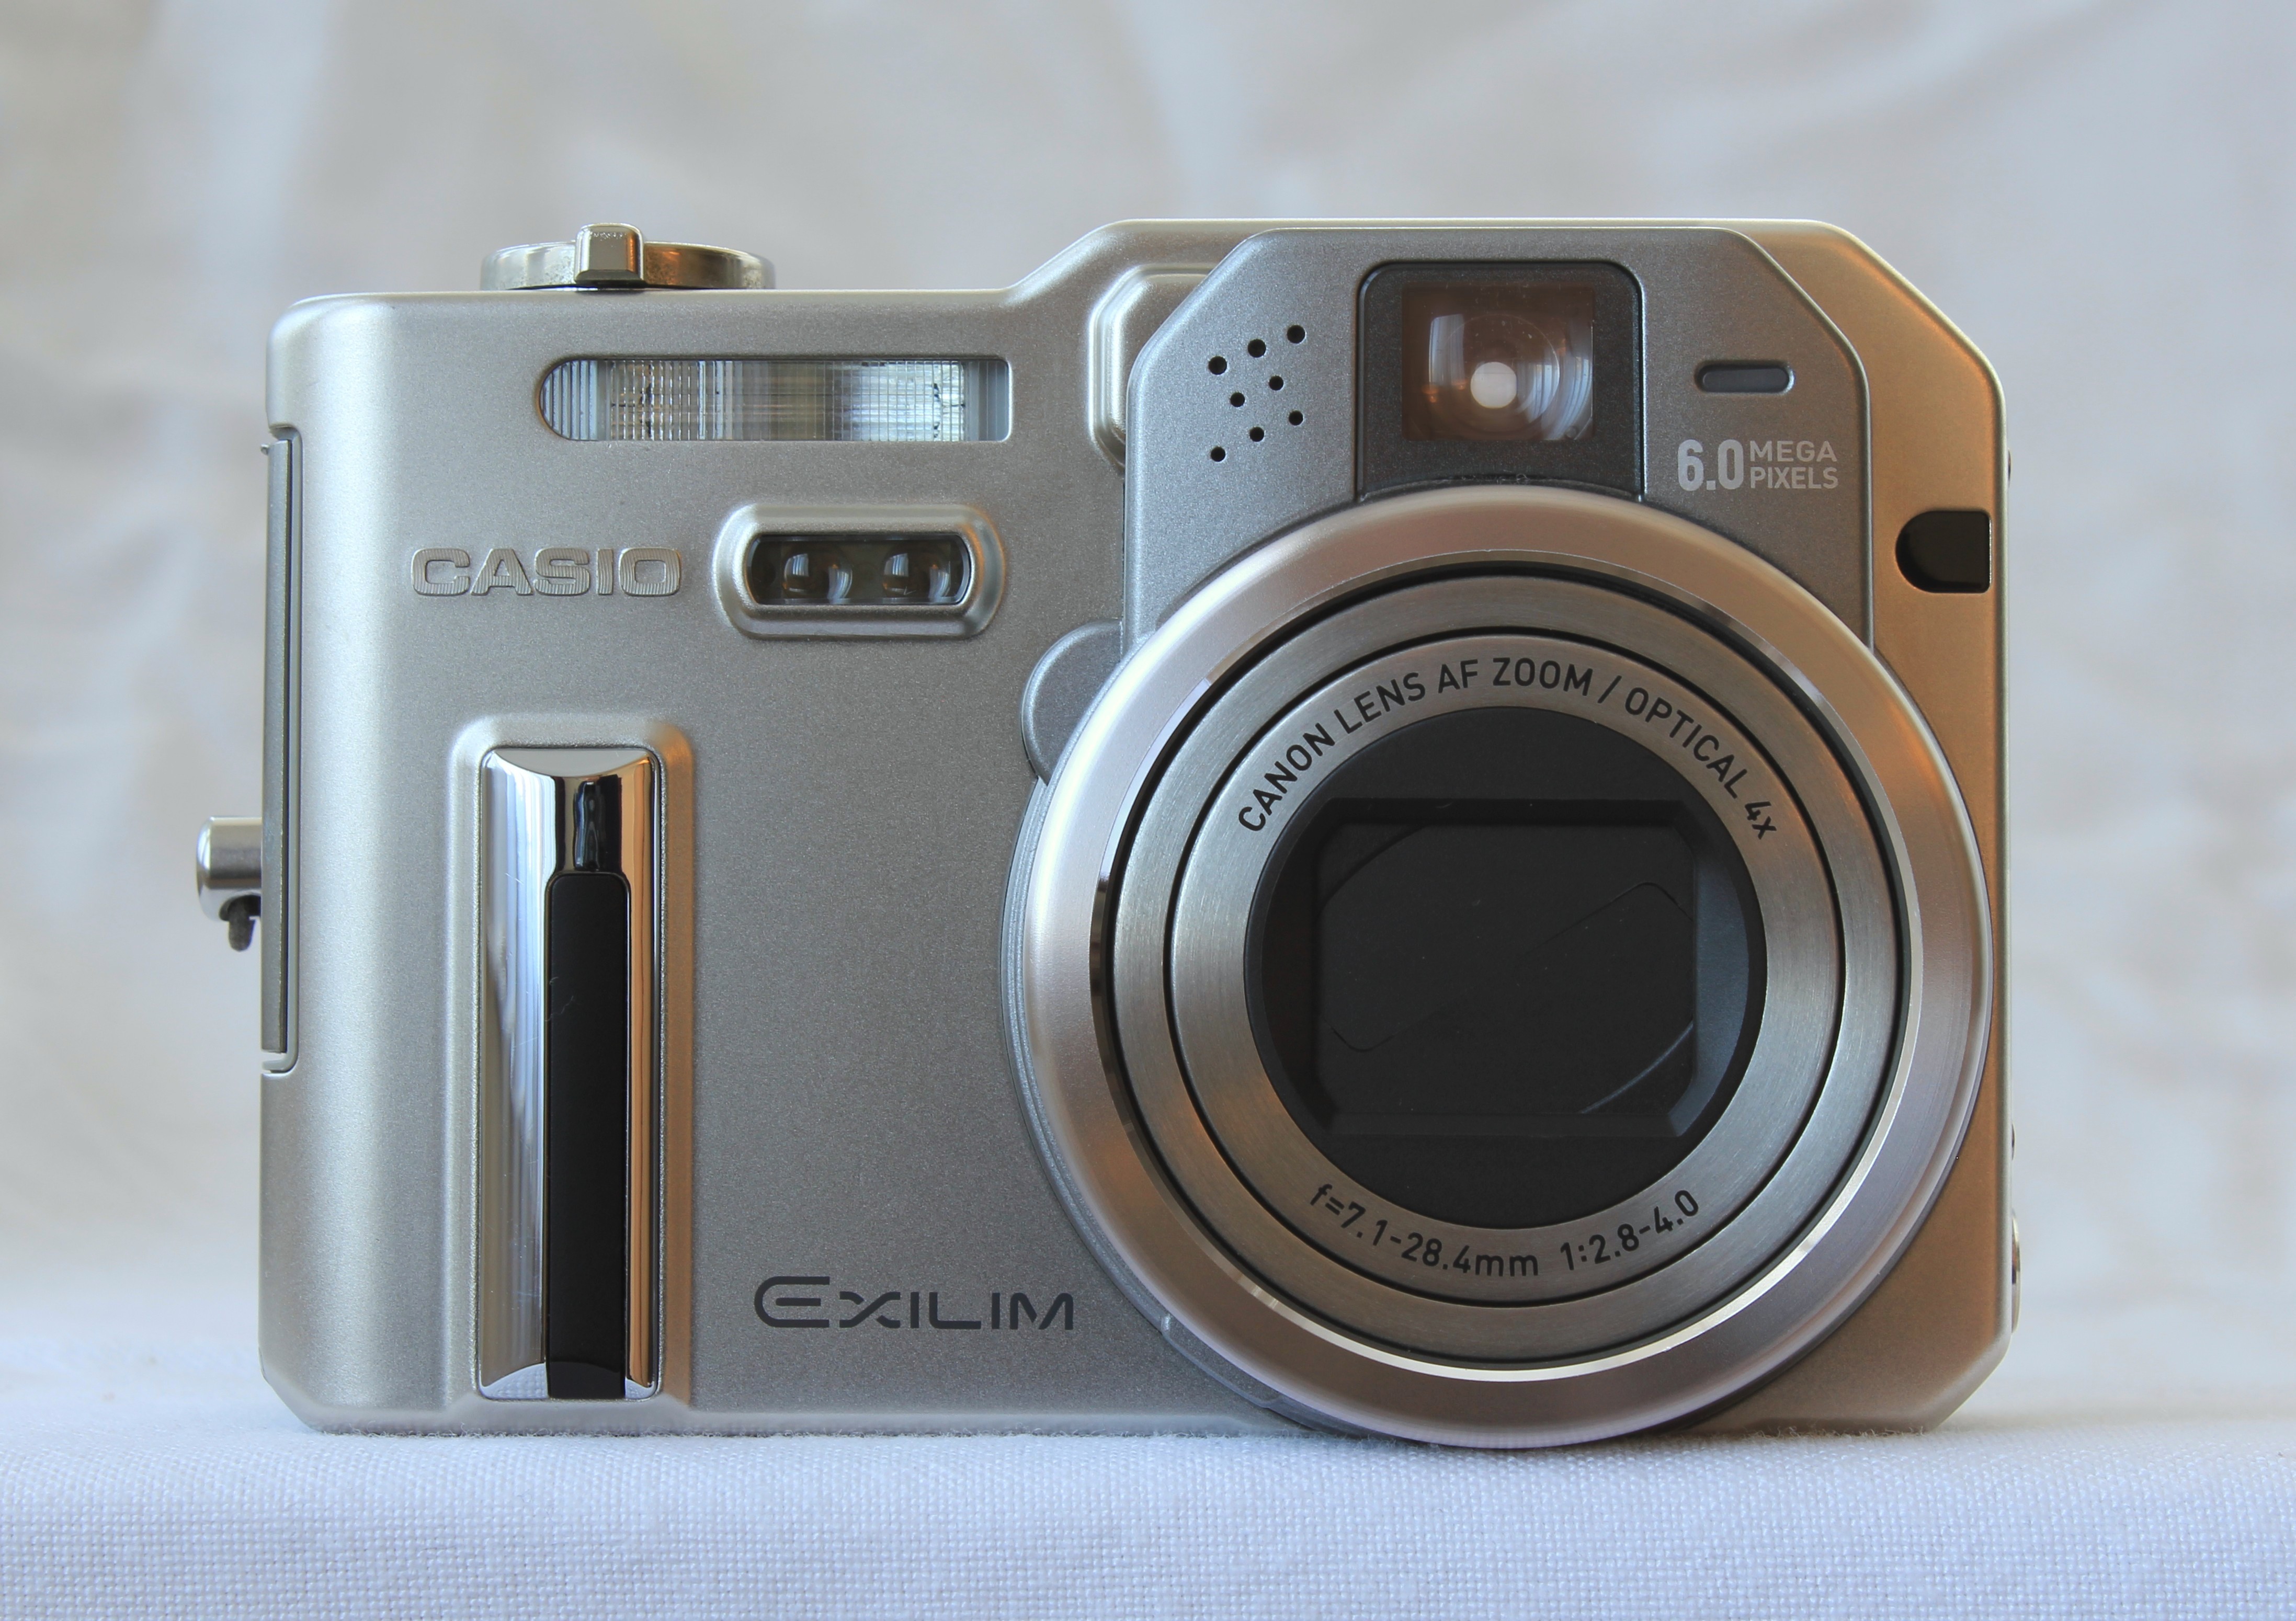 Casio Exilim EX-P600 Digital Camera